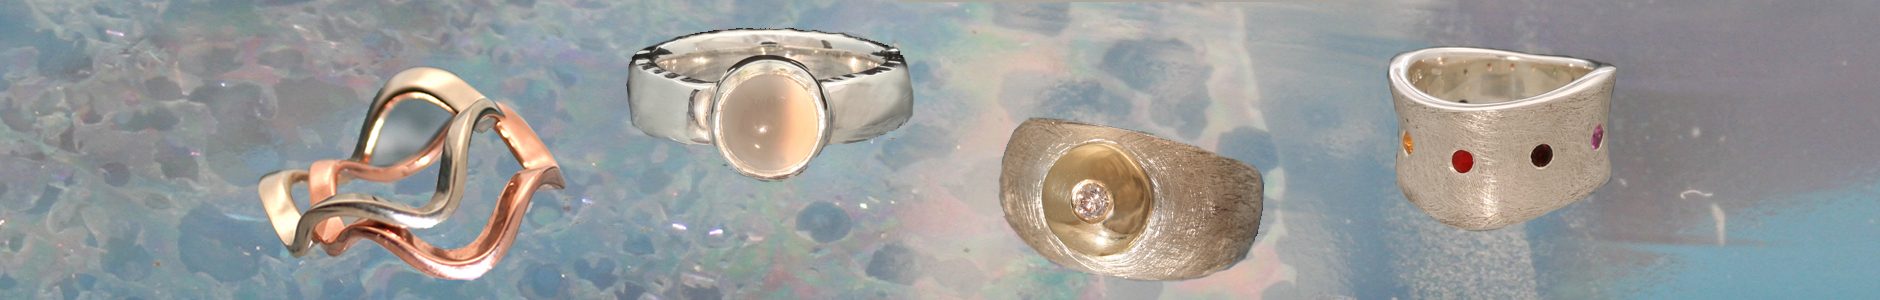 Een witgouden golfring en een roodgouden golfring, die tegen elkaar gedragen kunnen worden, een zilveren ring met een maansteen, een ijsmatte kogelring met een geelgouden schijfje met hierin een champagnekleurige briljant gezet, een gegolfde ring met rondom stenen gezet in de chakrakleuren.